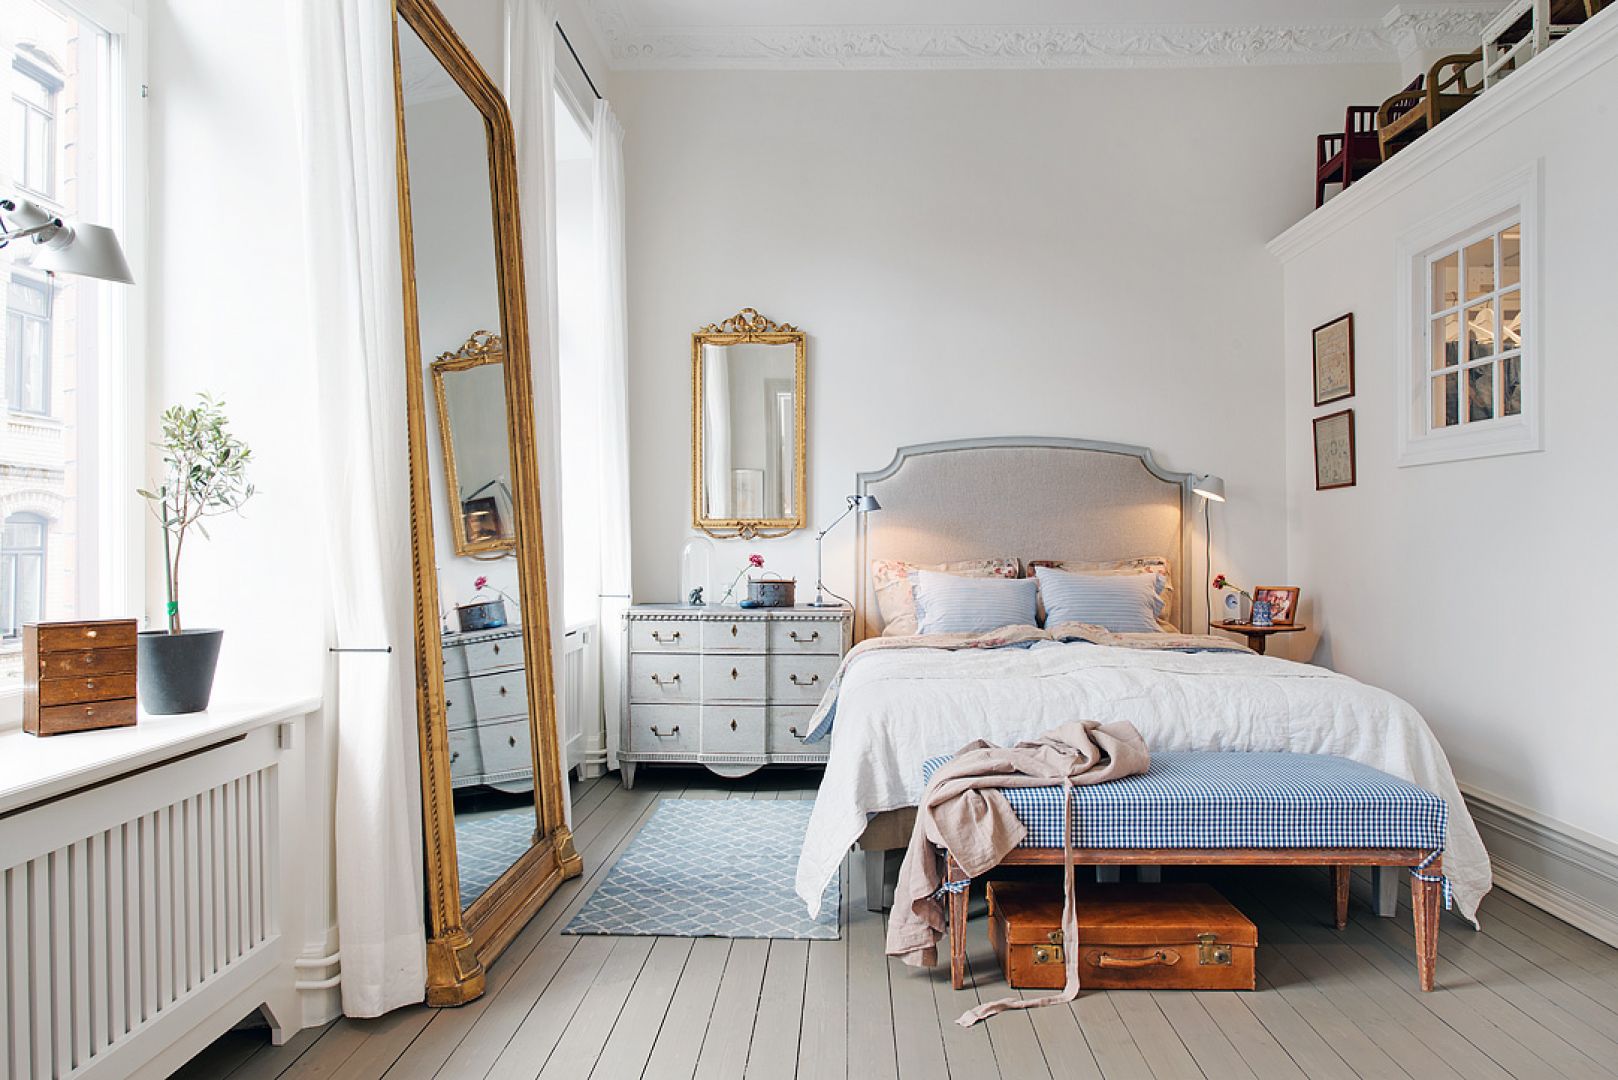 Wysokie lustro w starej ramie, oparte o ścianę to klasyczny element skandynawskiej sypialni. Nie tylko optycznie ją powiększy, ale również będzie piękną ozdobą. Fot. Alvem Makleri